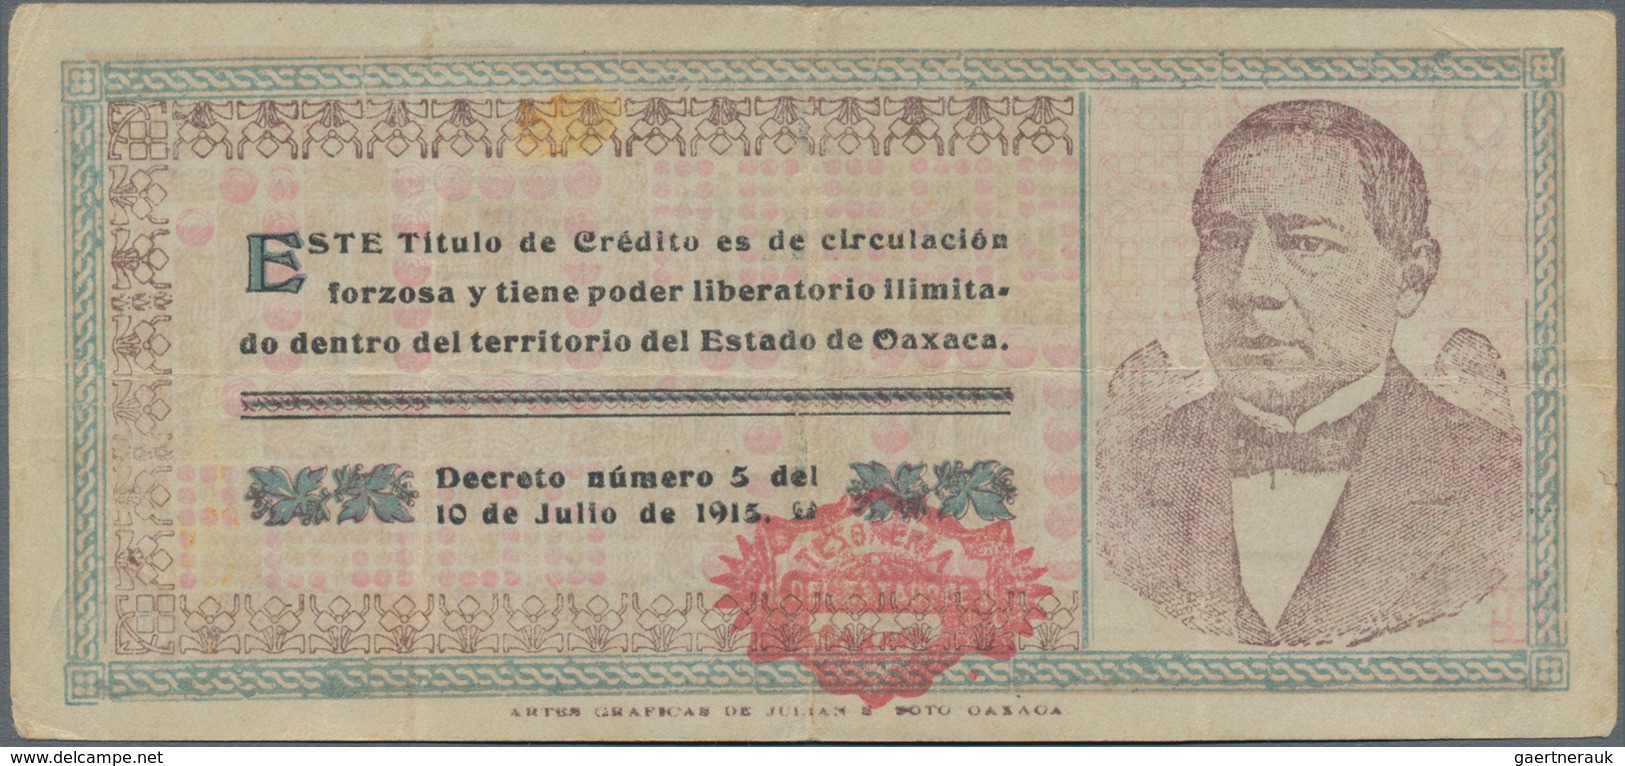 Mexico: Tesorería General Del Estado De Oaxaca 10 Pesos 1915, P.S957a In About XF Condition. - Mexiko